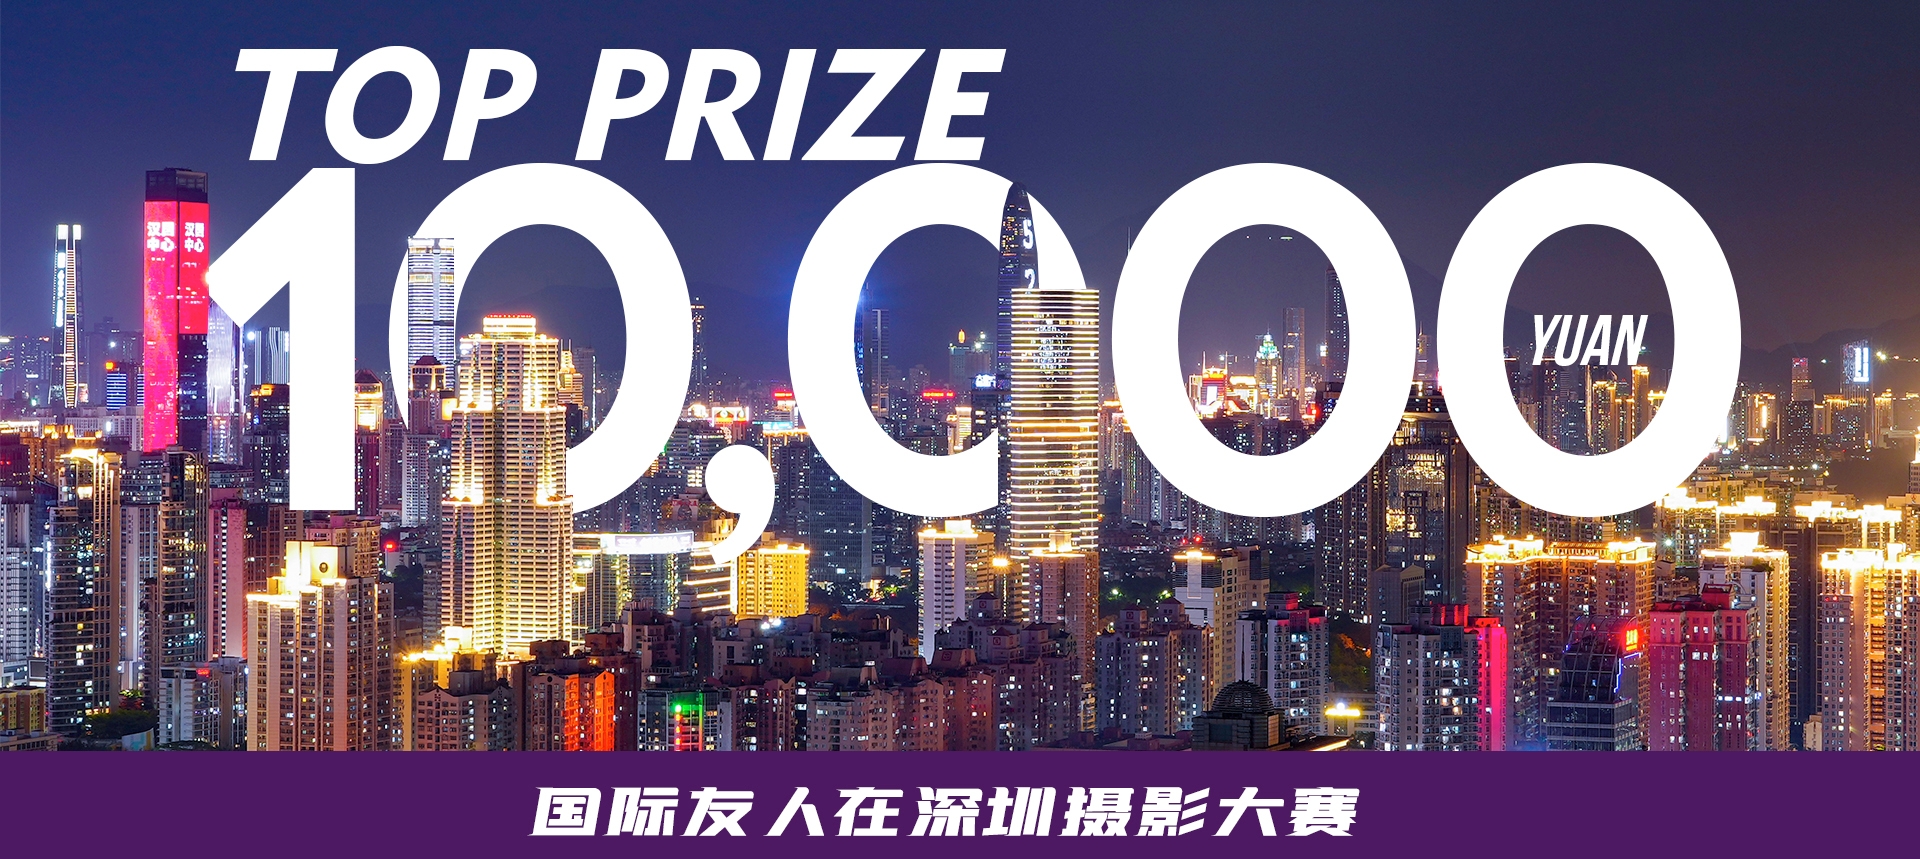 Participez au concours de photos pour expatriés et gagnez 10.000 ¥